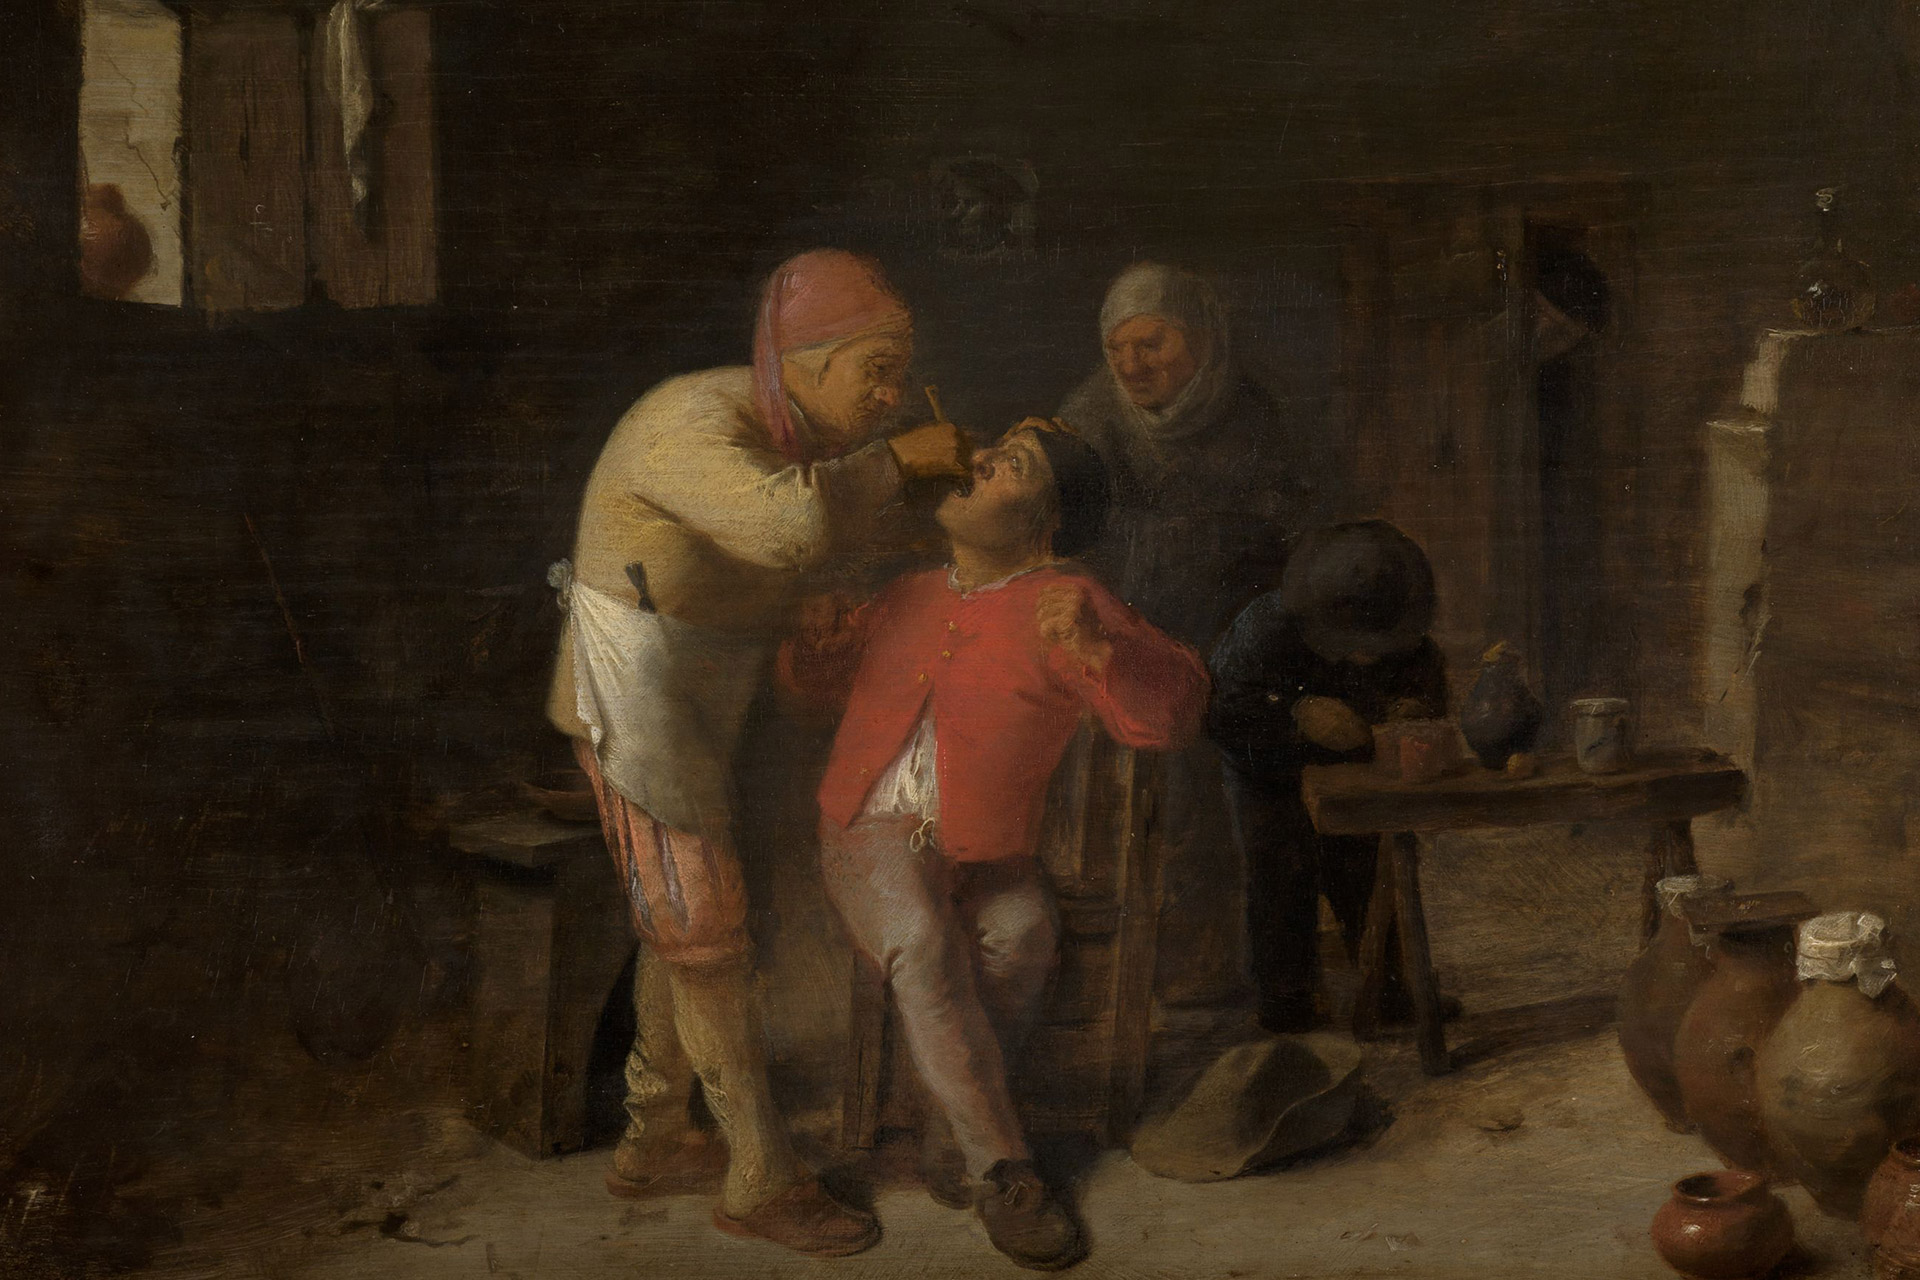 Auf dem Gemälde sieht man den Innenraum einer dunklen Hütte und einen Zahnarzt, der gerade im Mund eines Patienten behandelt. Im Hintergrund ist eine weitere Person und diverse Krüge zu sehen.